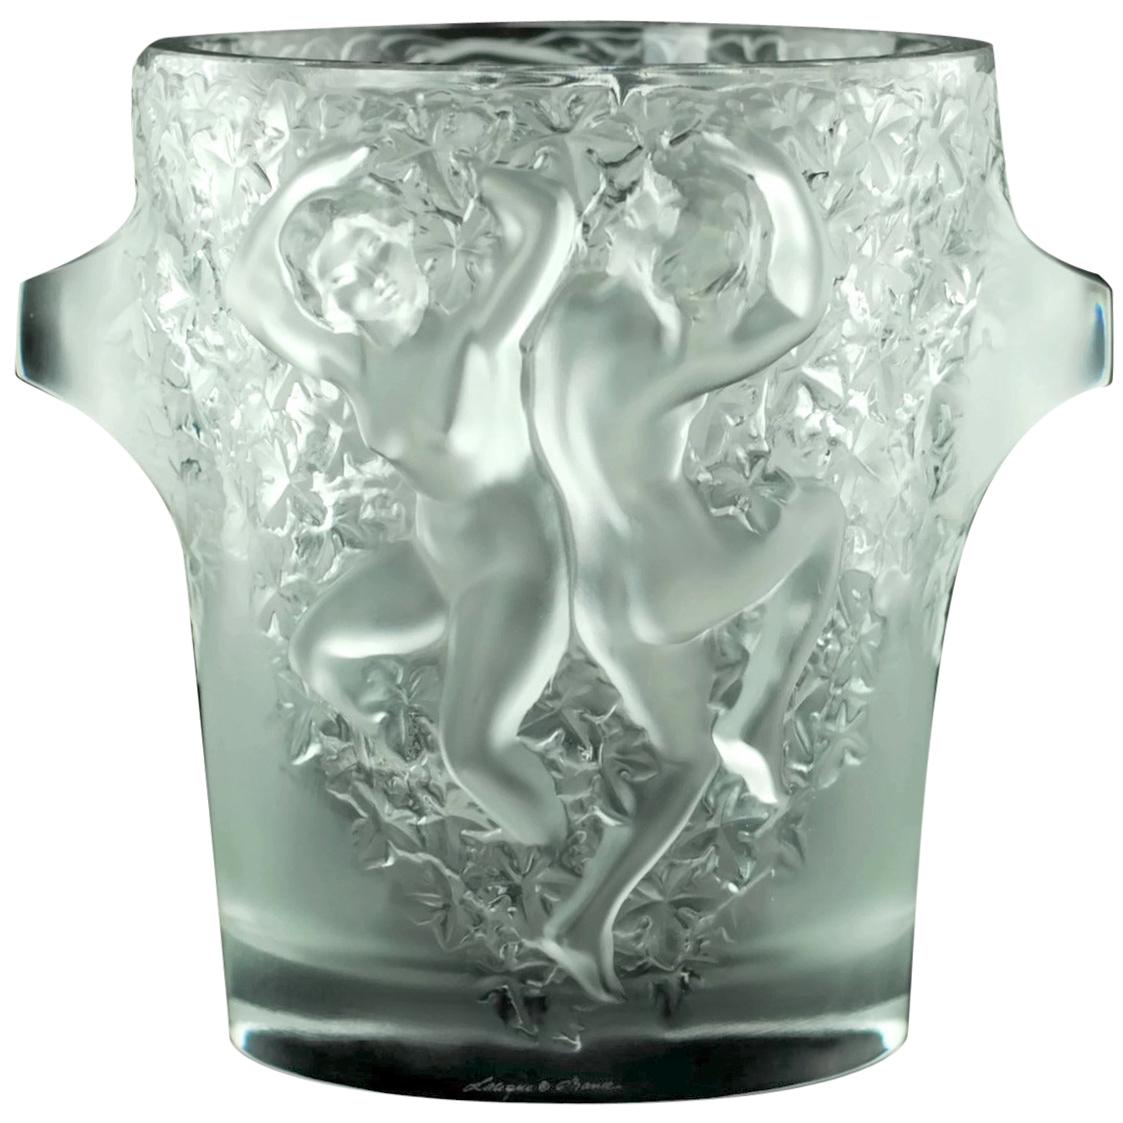 Seau à glace Ganymède en cristal de Lalique pour le champagne